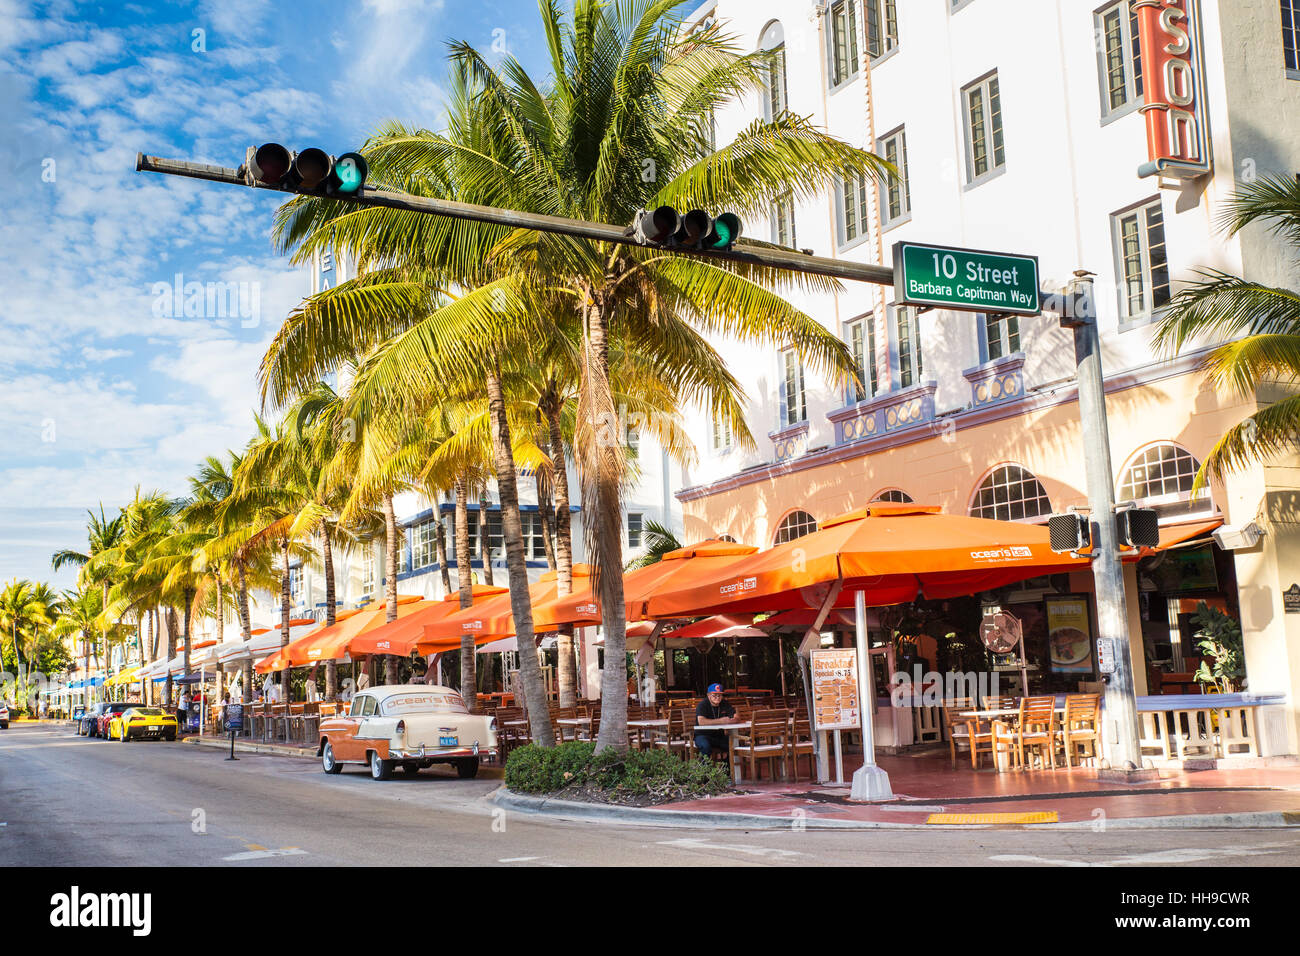 Afficher le long de la célèbre locations et touristique situé sur Ocean Drive dans le quartier Art déco de South Beach, Miami, un jour ensoleillé Banque D'Images